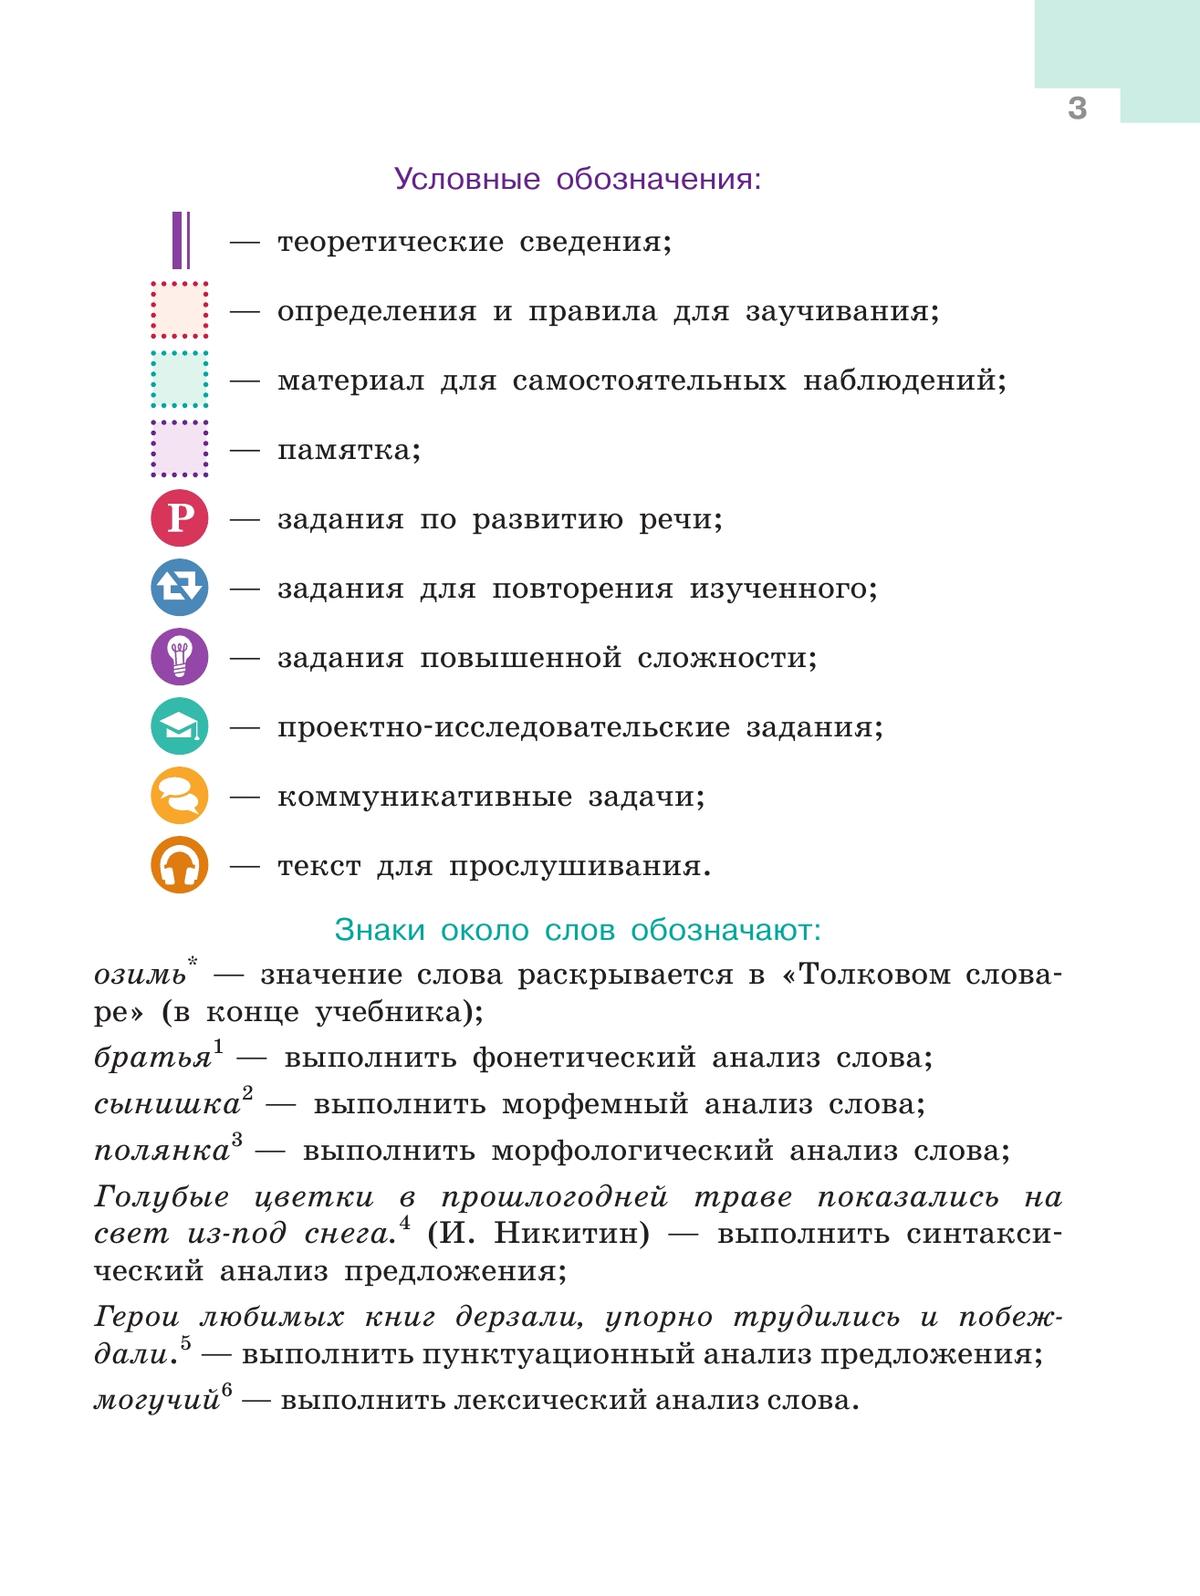 Русский язык. 5 класс. Учебник. В 2-х ч. Ч. 1 10